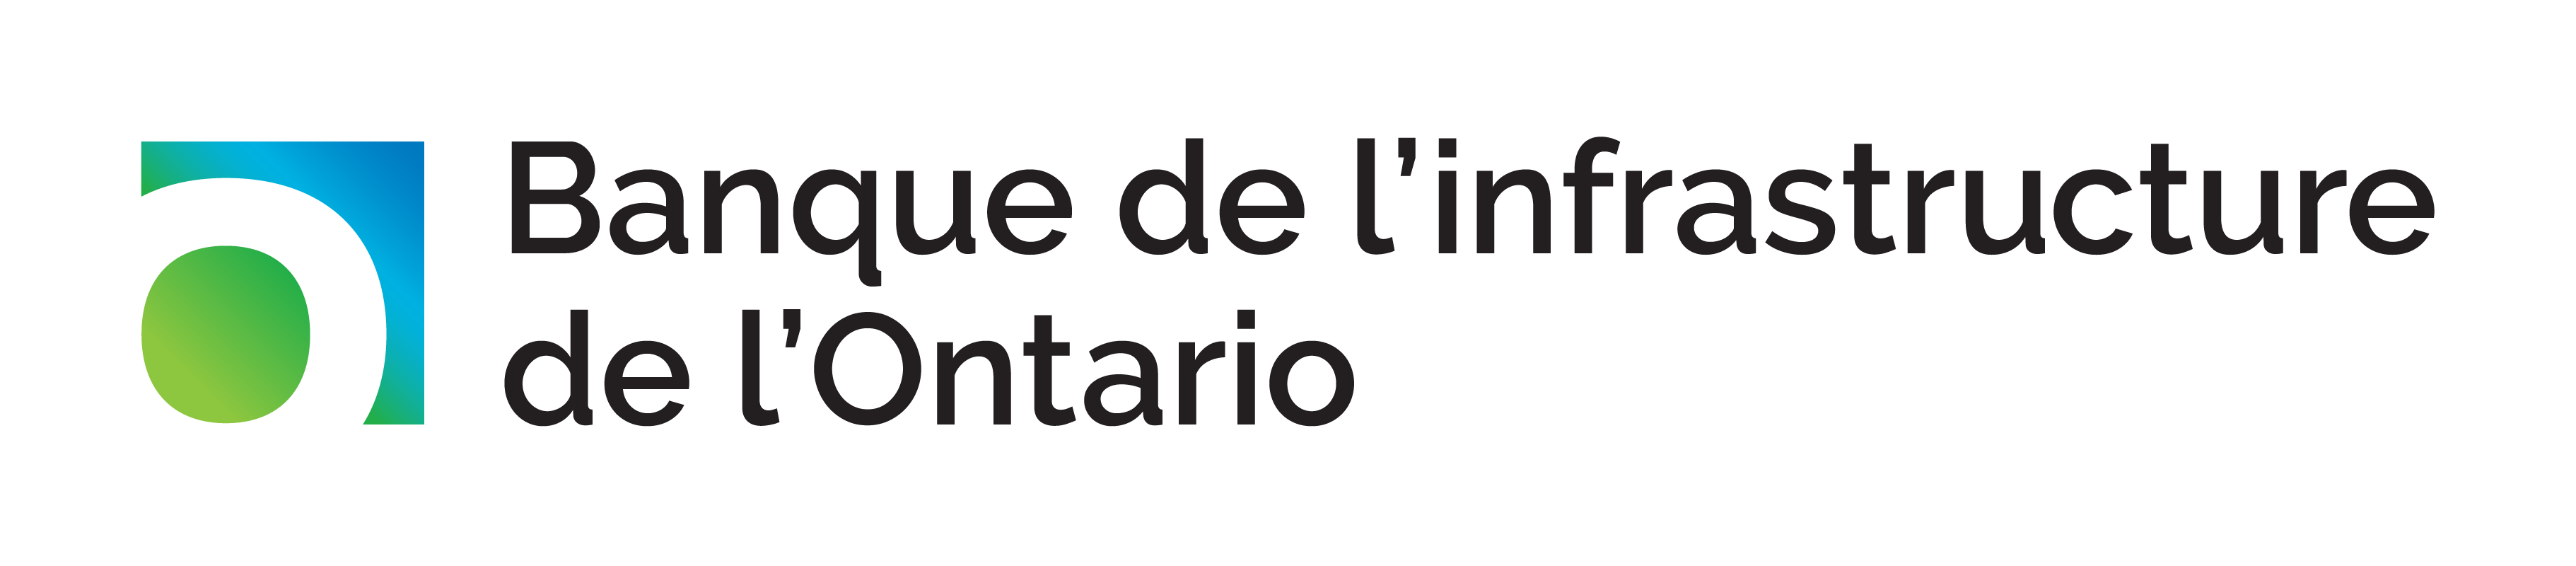 Logo de la Banque de l’infrastructure de l’Ontario.